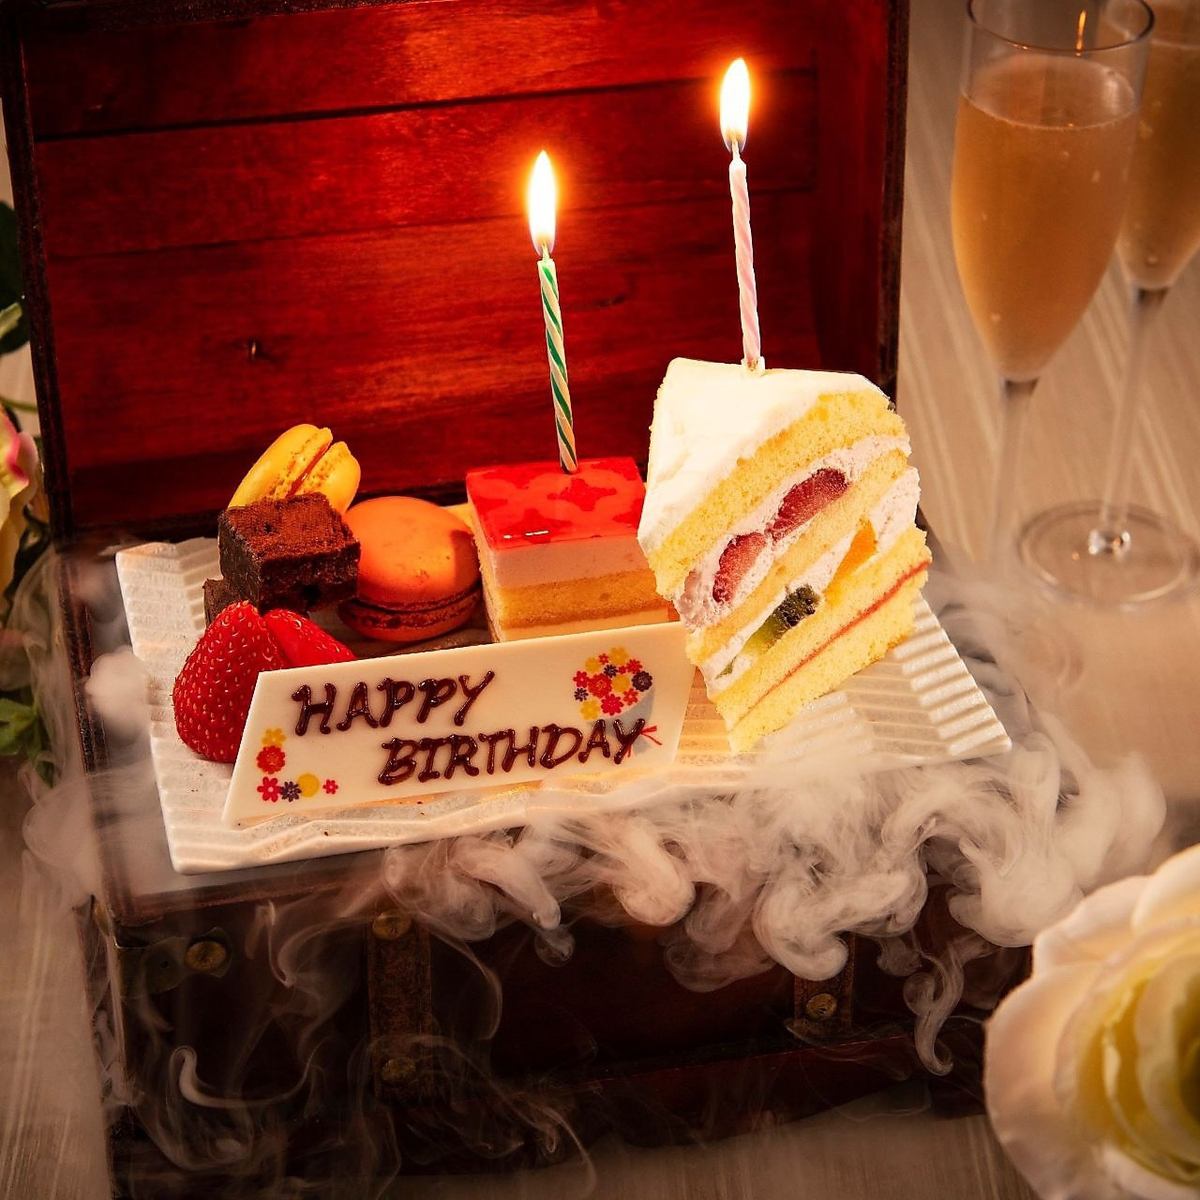 生日和周年紀念日的免費蛋糕服務♪有指示方向的寶藏板